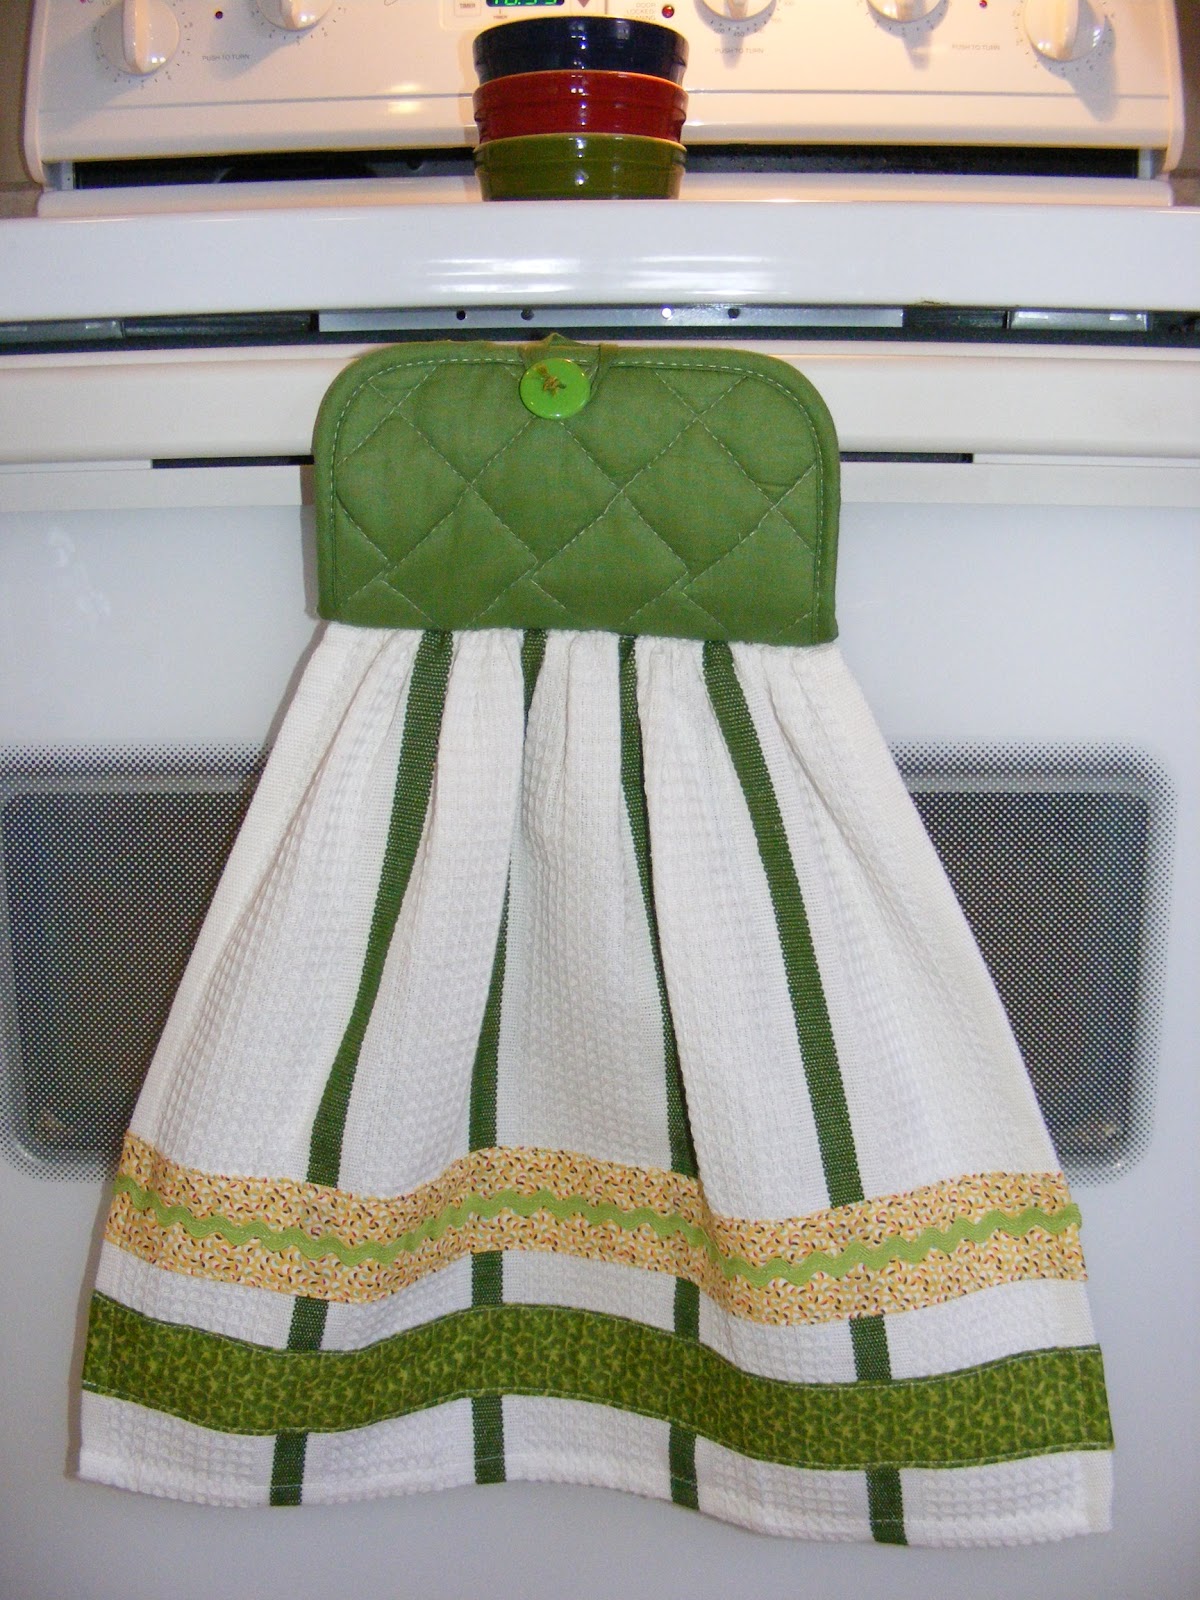 Image result for kitchen towels images